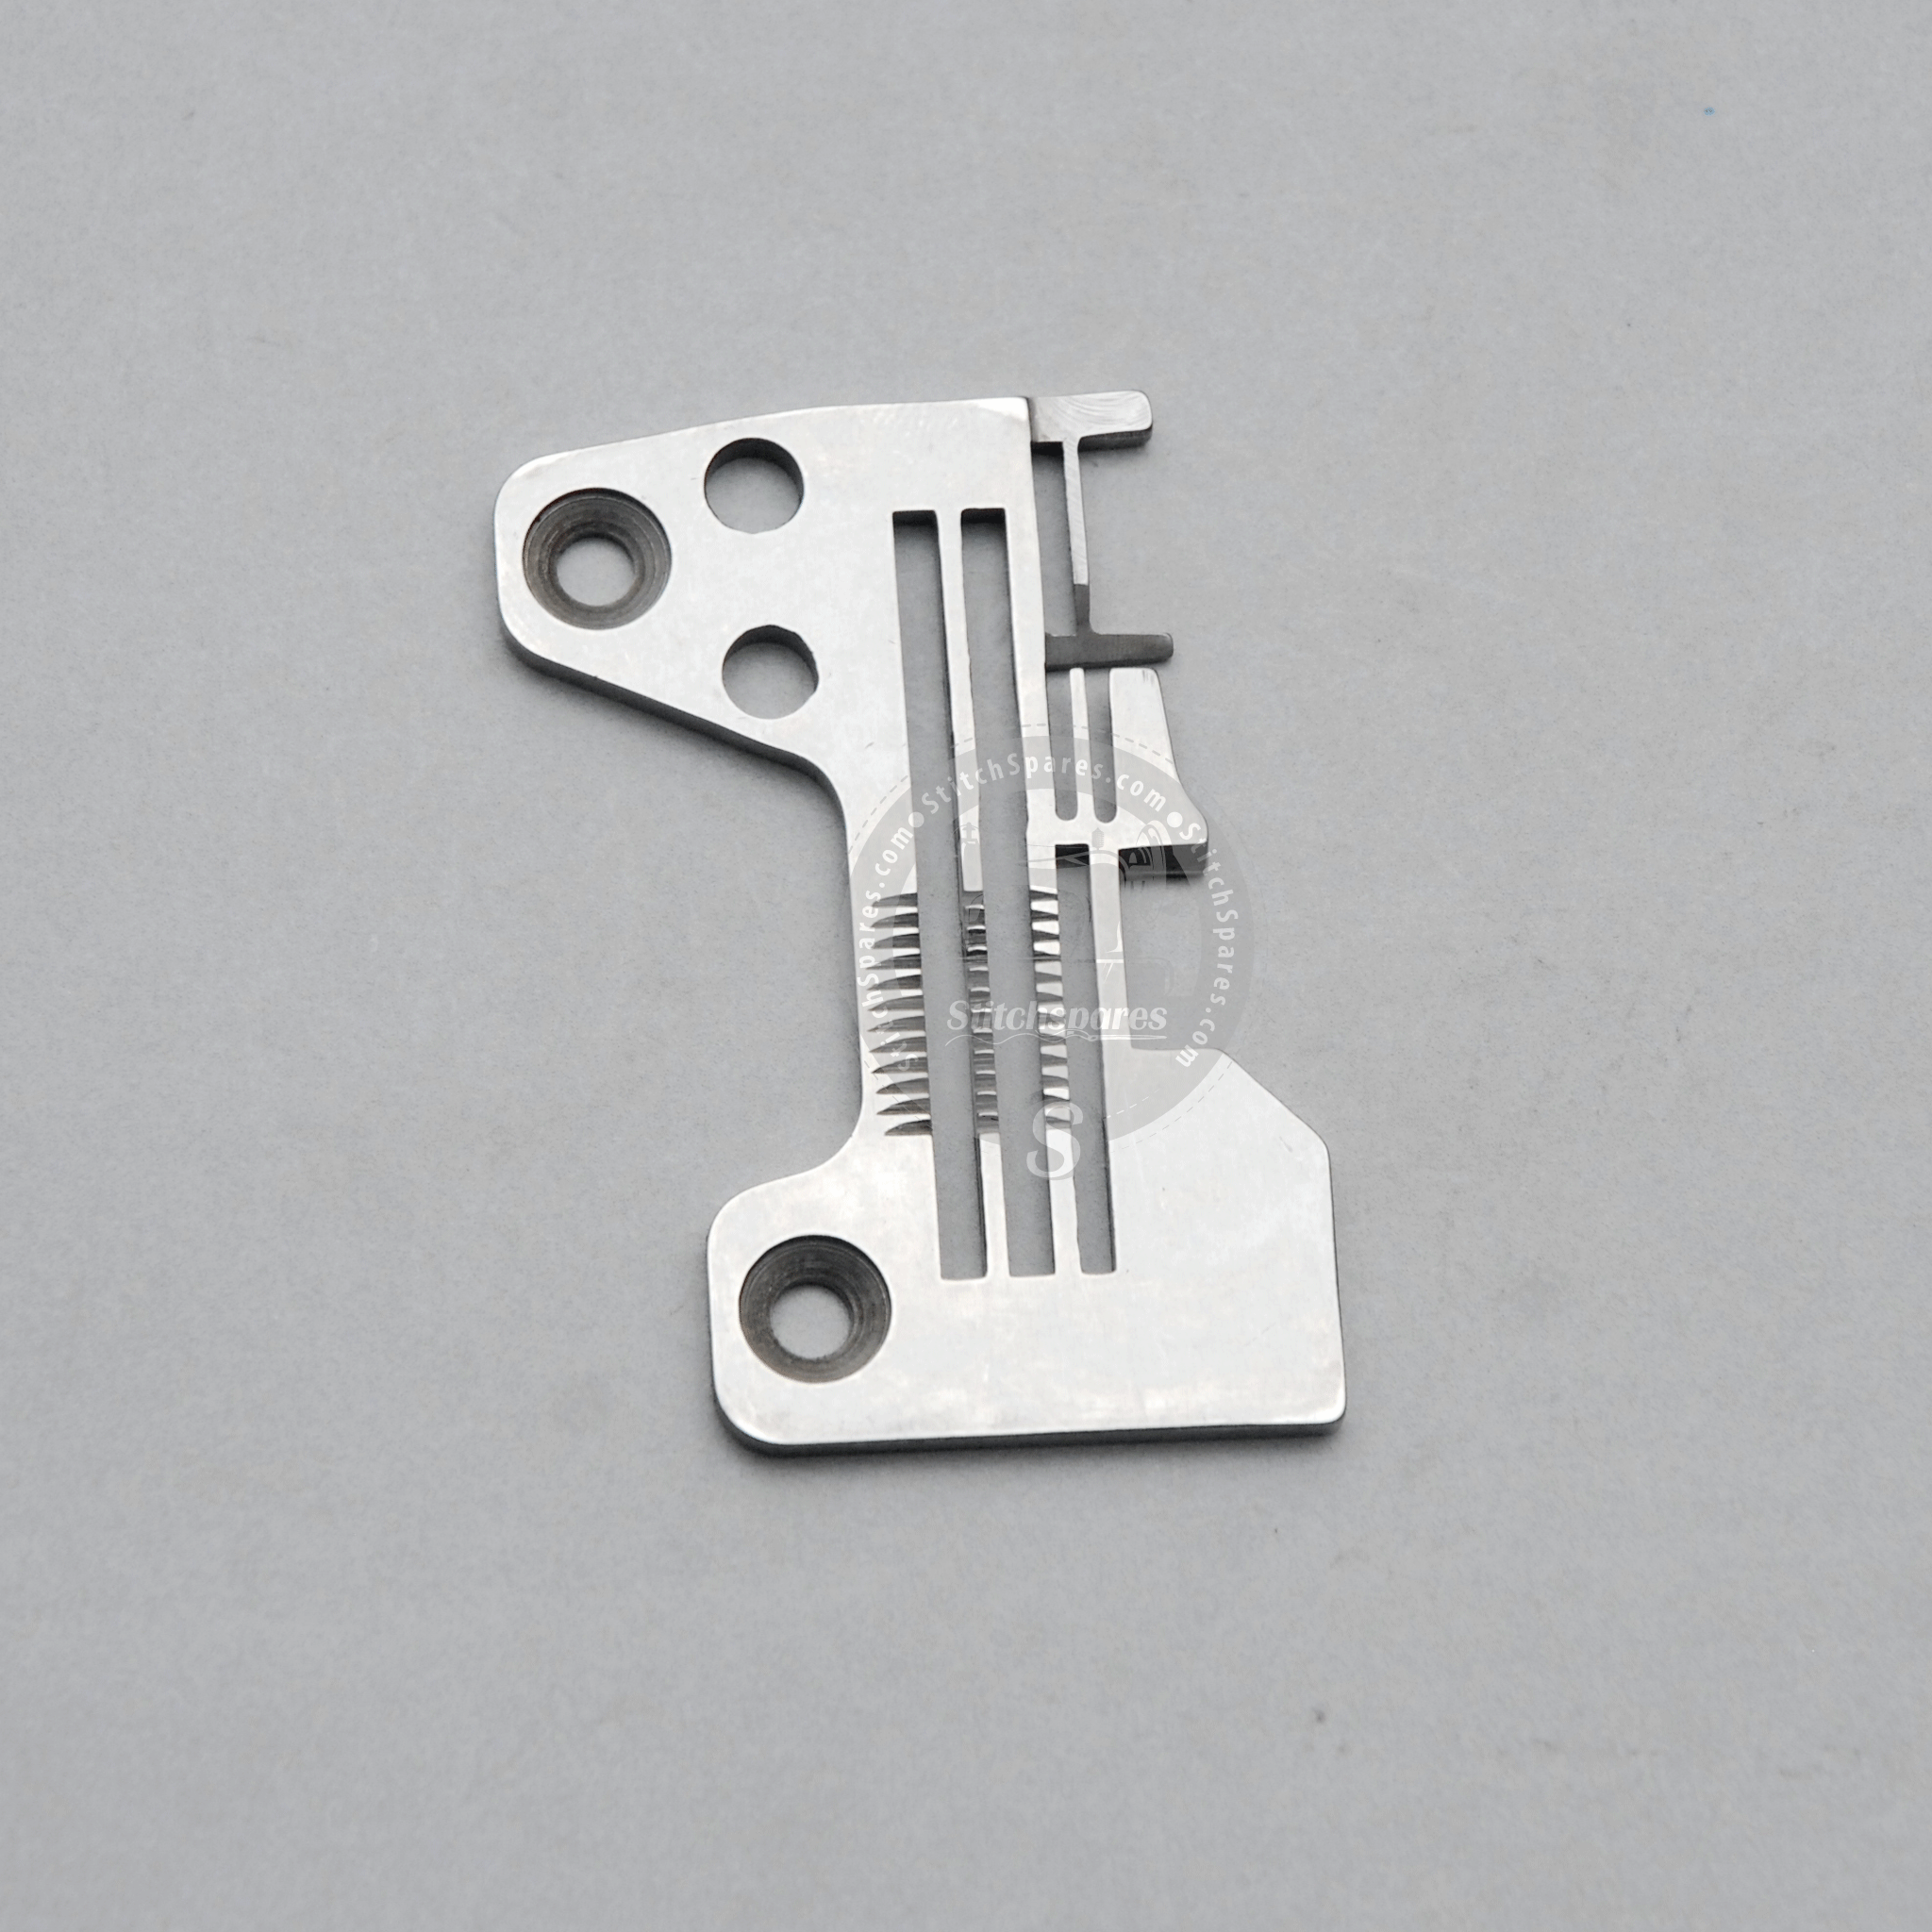 Strong-H R4305-Joe-E00 placa de aguja Juki Mo-3914-Be6 (2.0 × 4.0) pieza de repuesto para máquina de coser